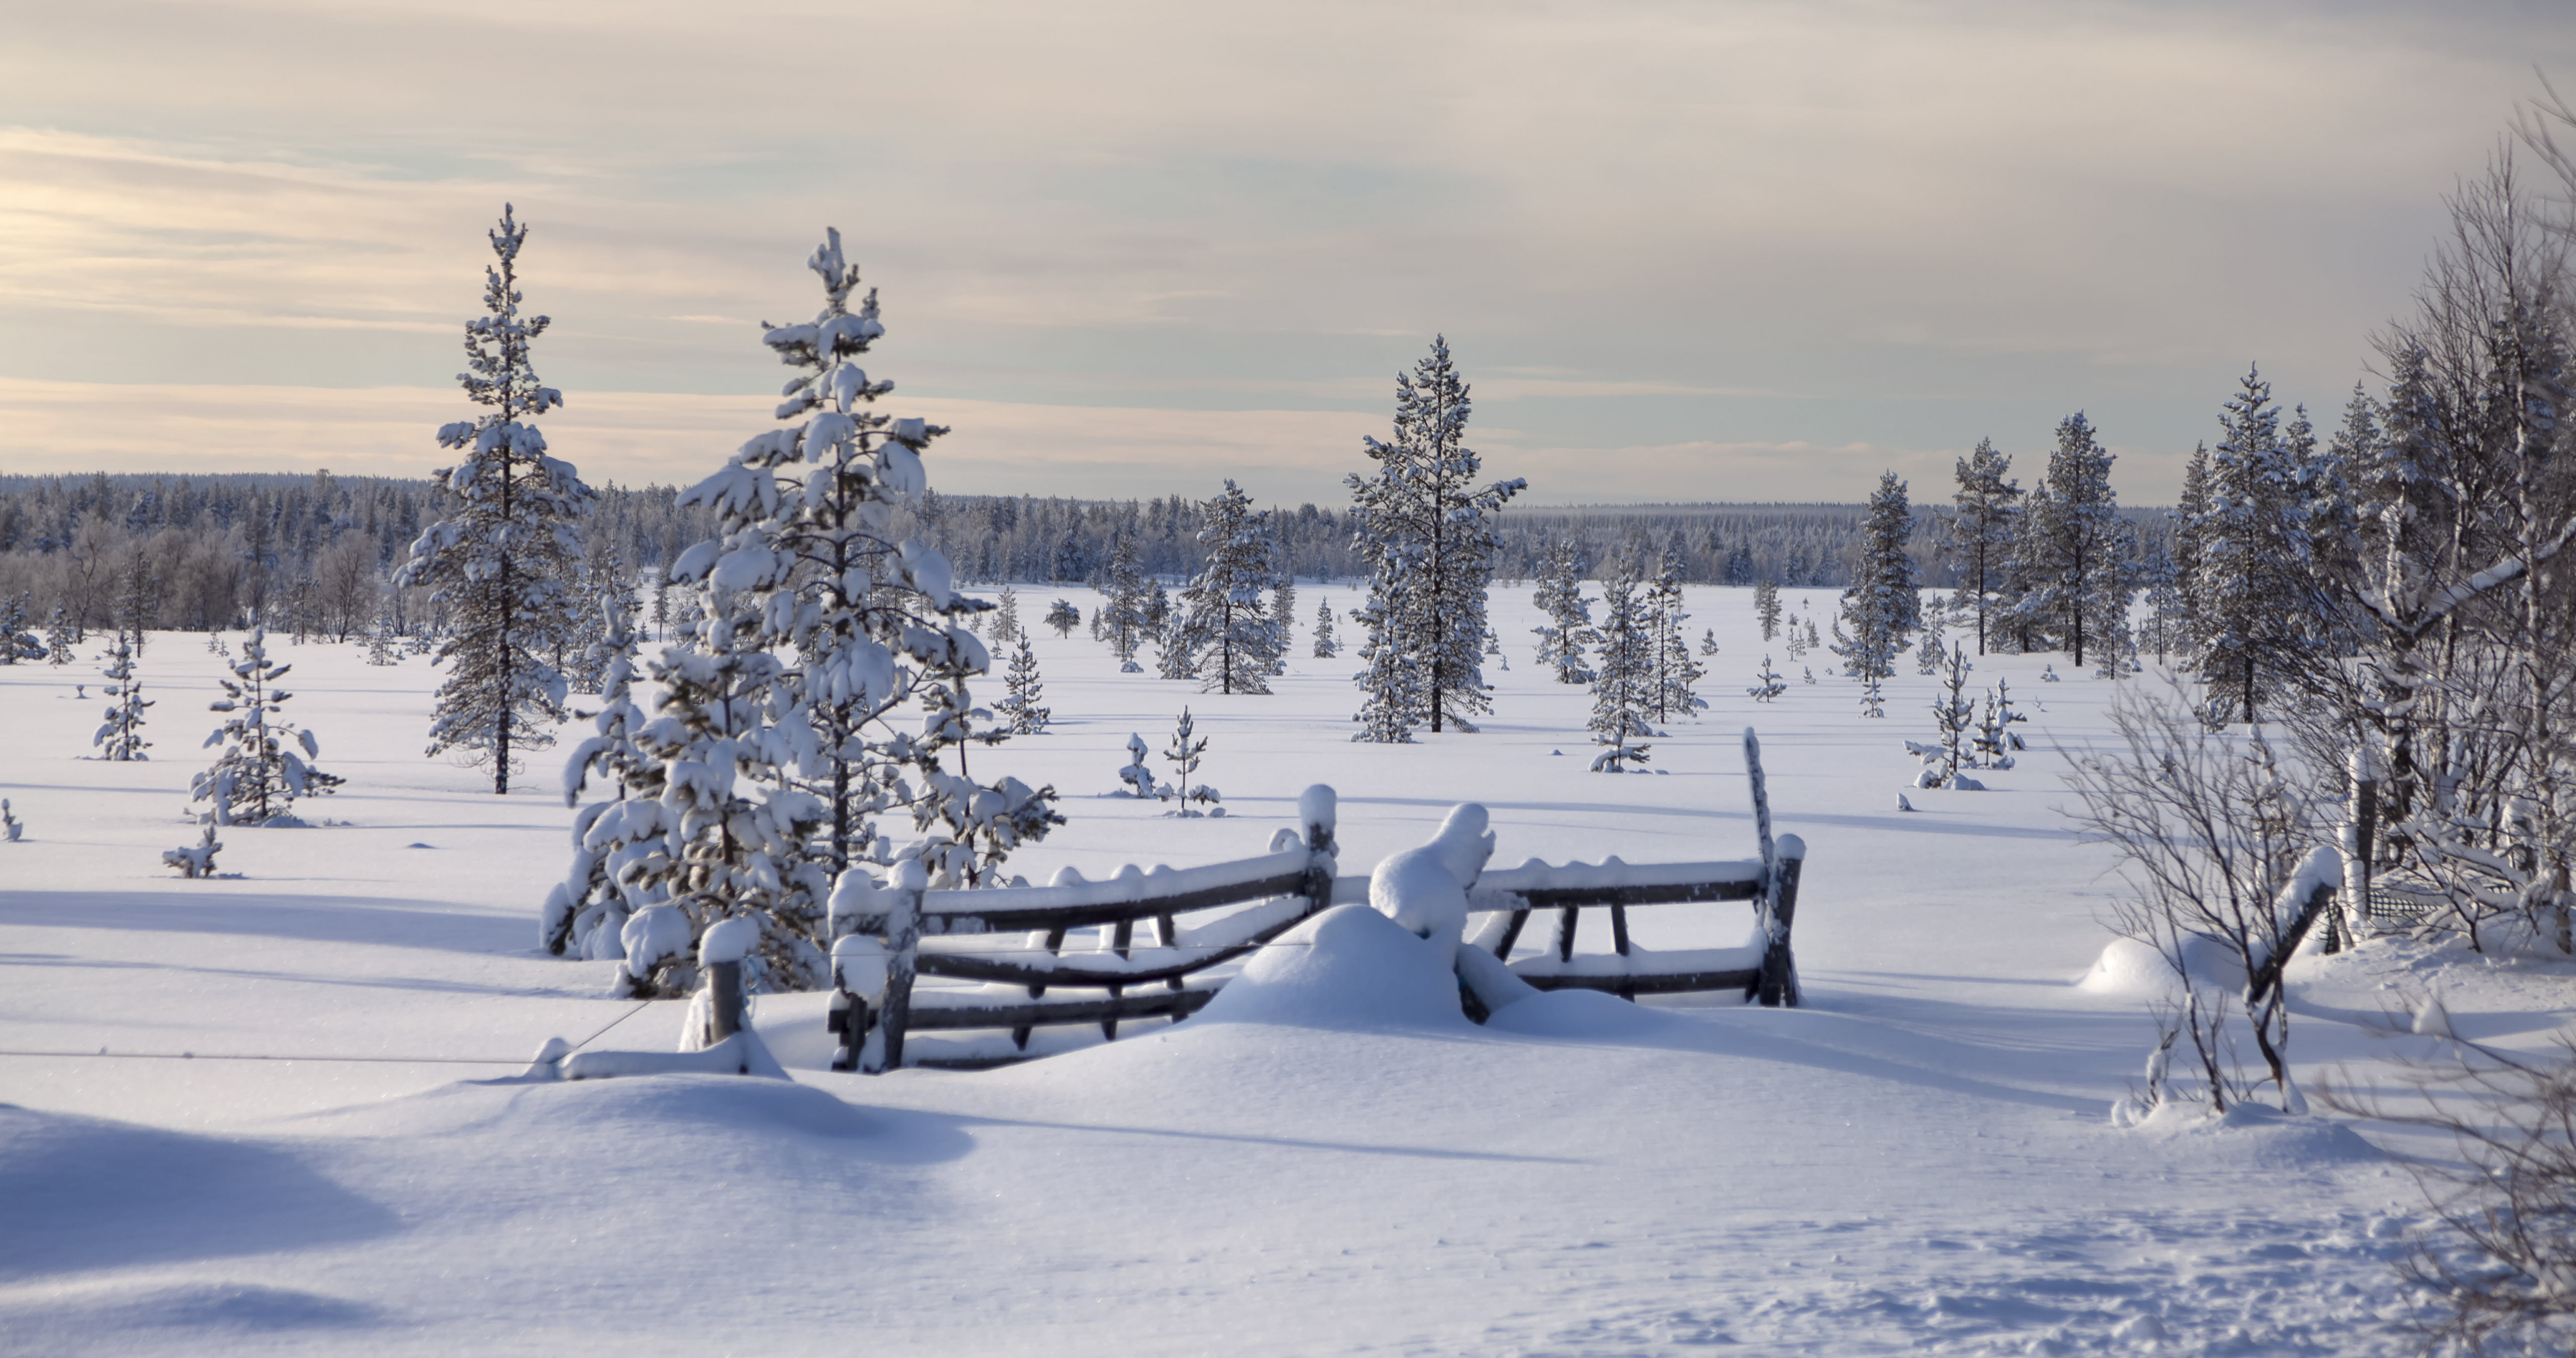 Обои на рабочий стол Lapland, закат, пейзаж, Sunset, снег, зима, Finland, деревья, мороз